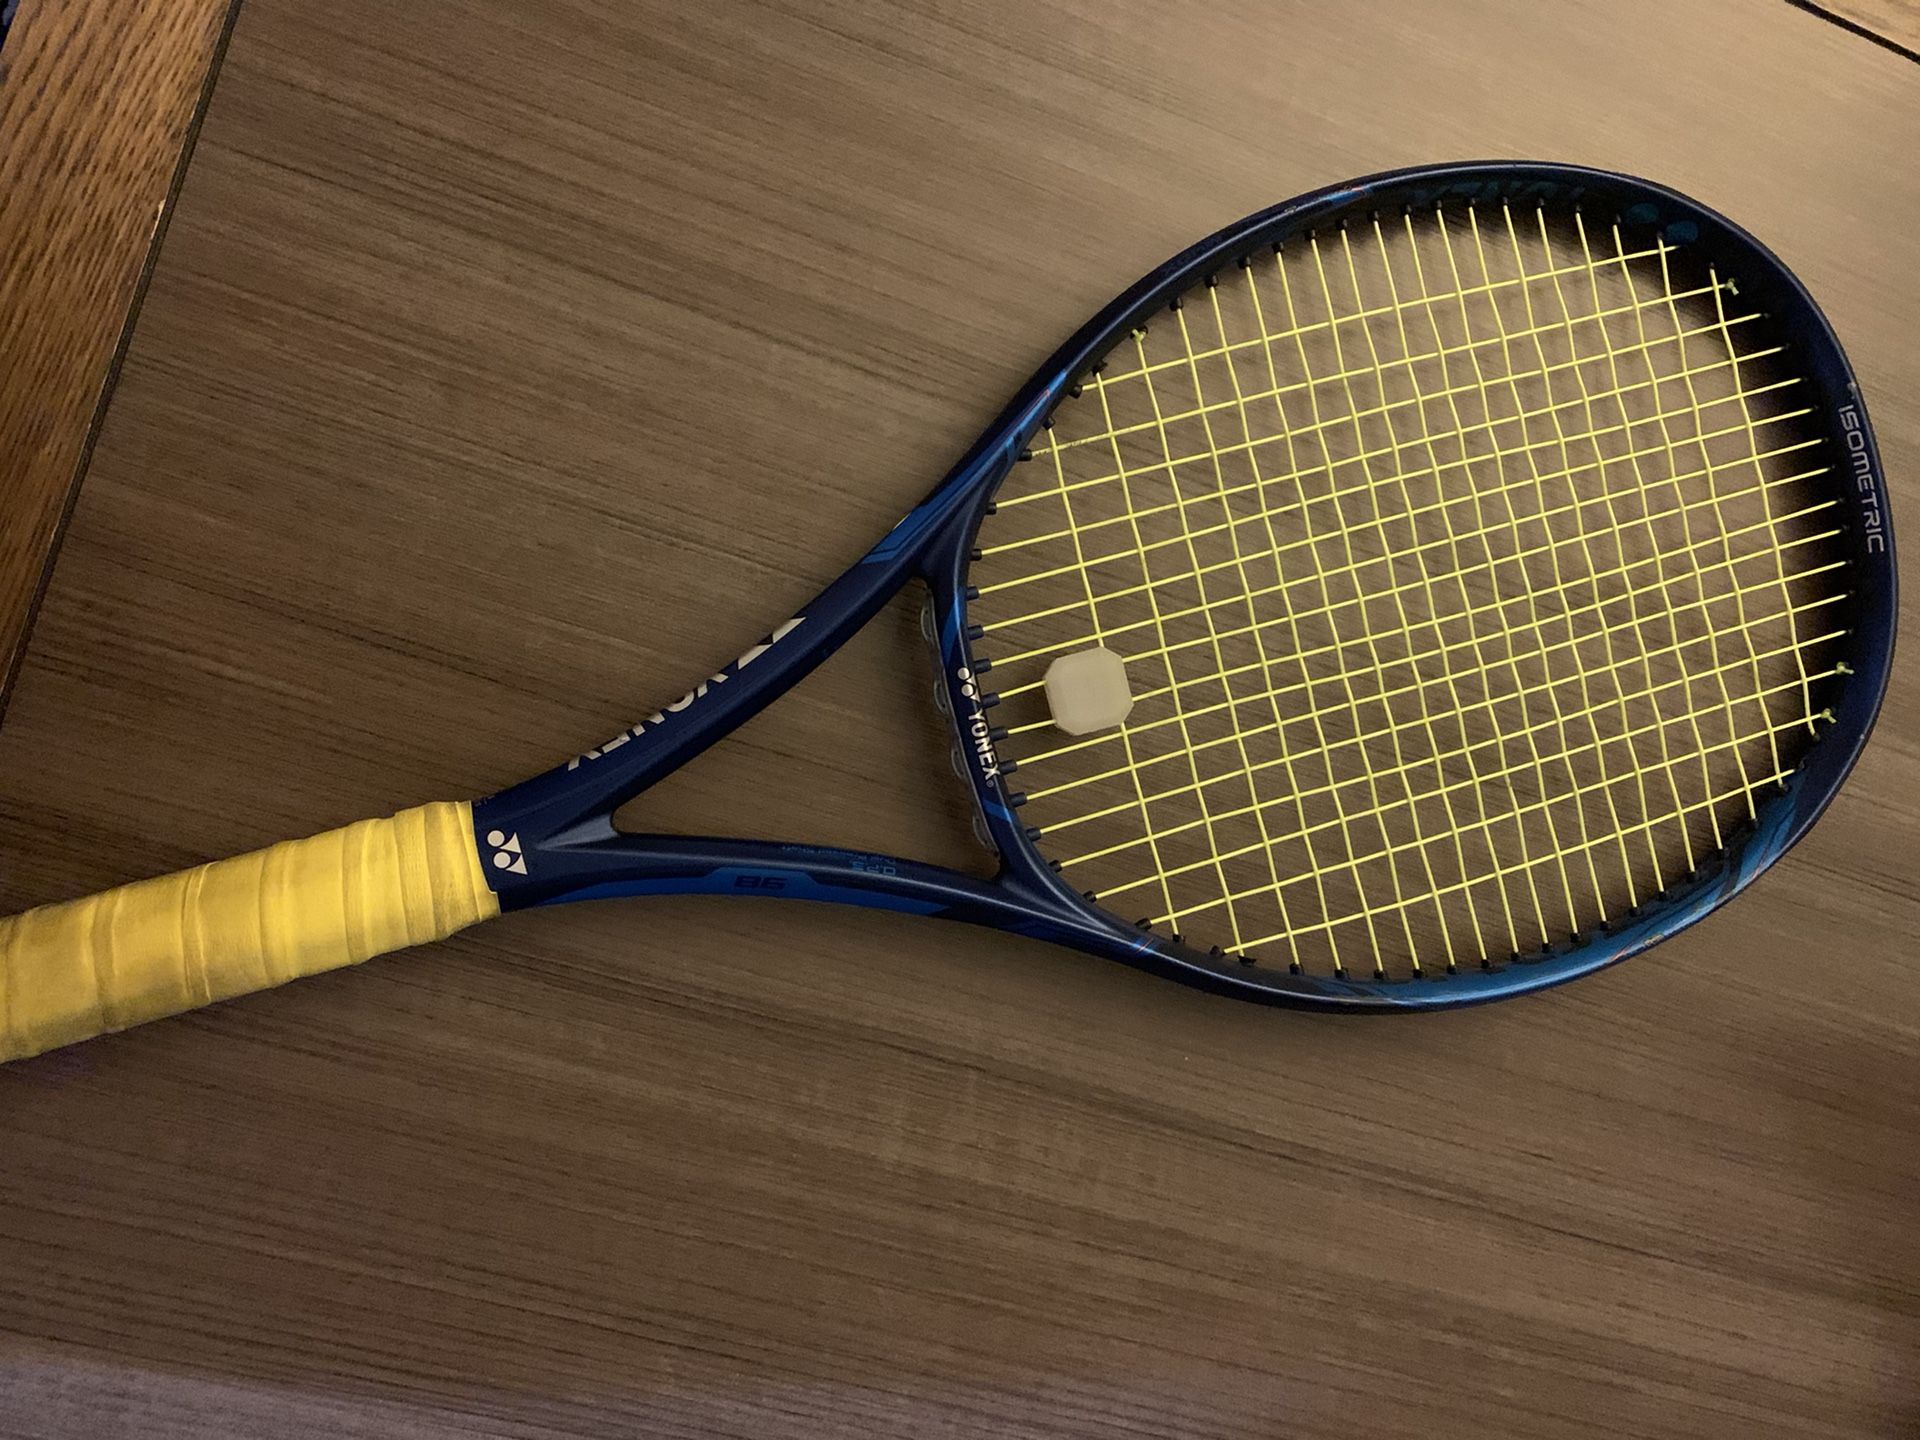 Tennis rackets Yonex Ezone 98 305g 4 1/4 (Kyrgios) Babolat Pure Strike 4 1/4 305g (Thiem)